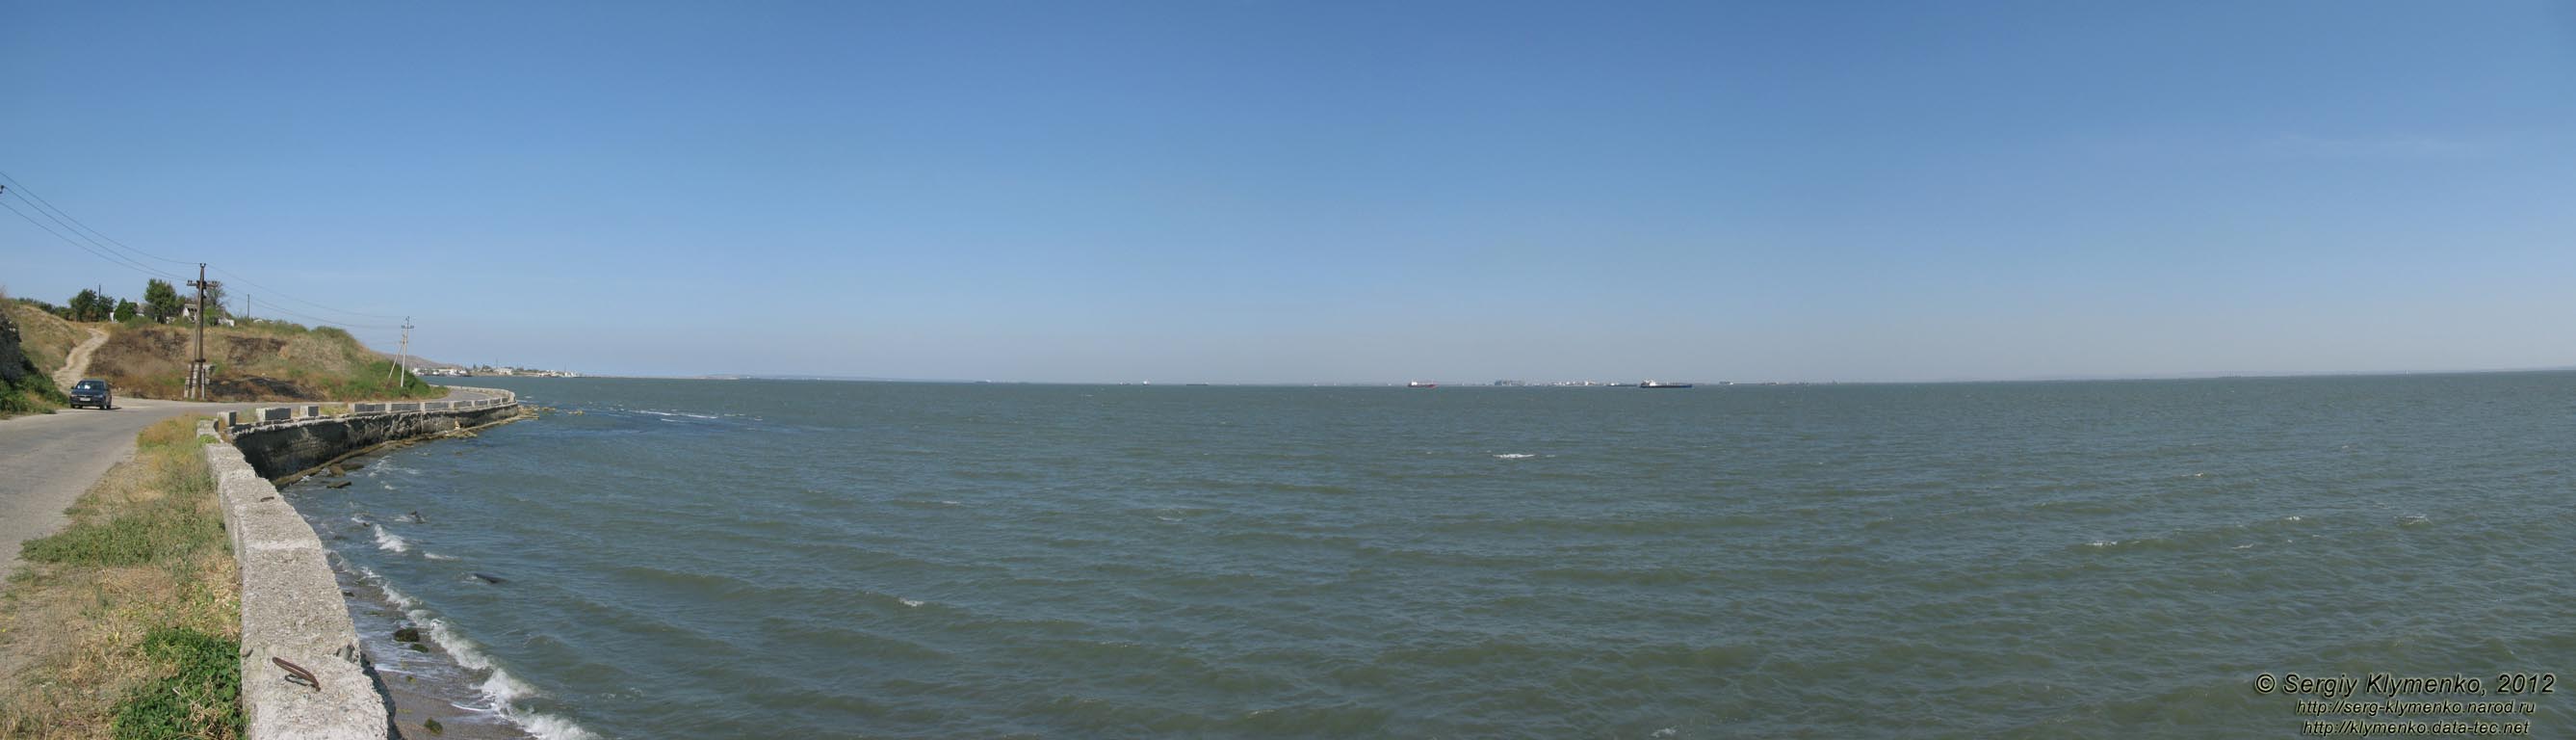 Крым, Керчь. Фото. Вид на Керченский пролив от северо-восточного бастиона крепости Ени-Кале. Панорама ~120°.